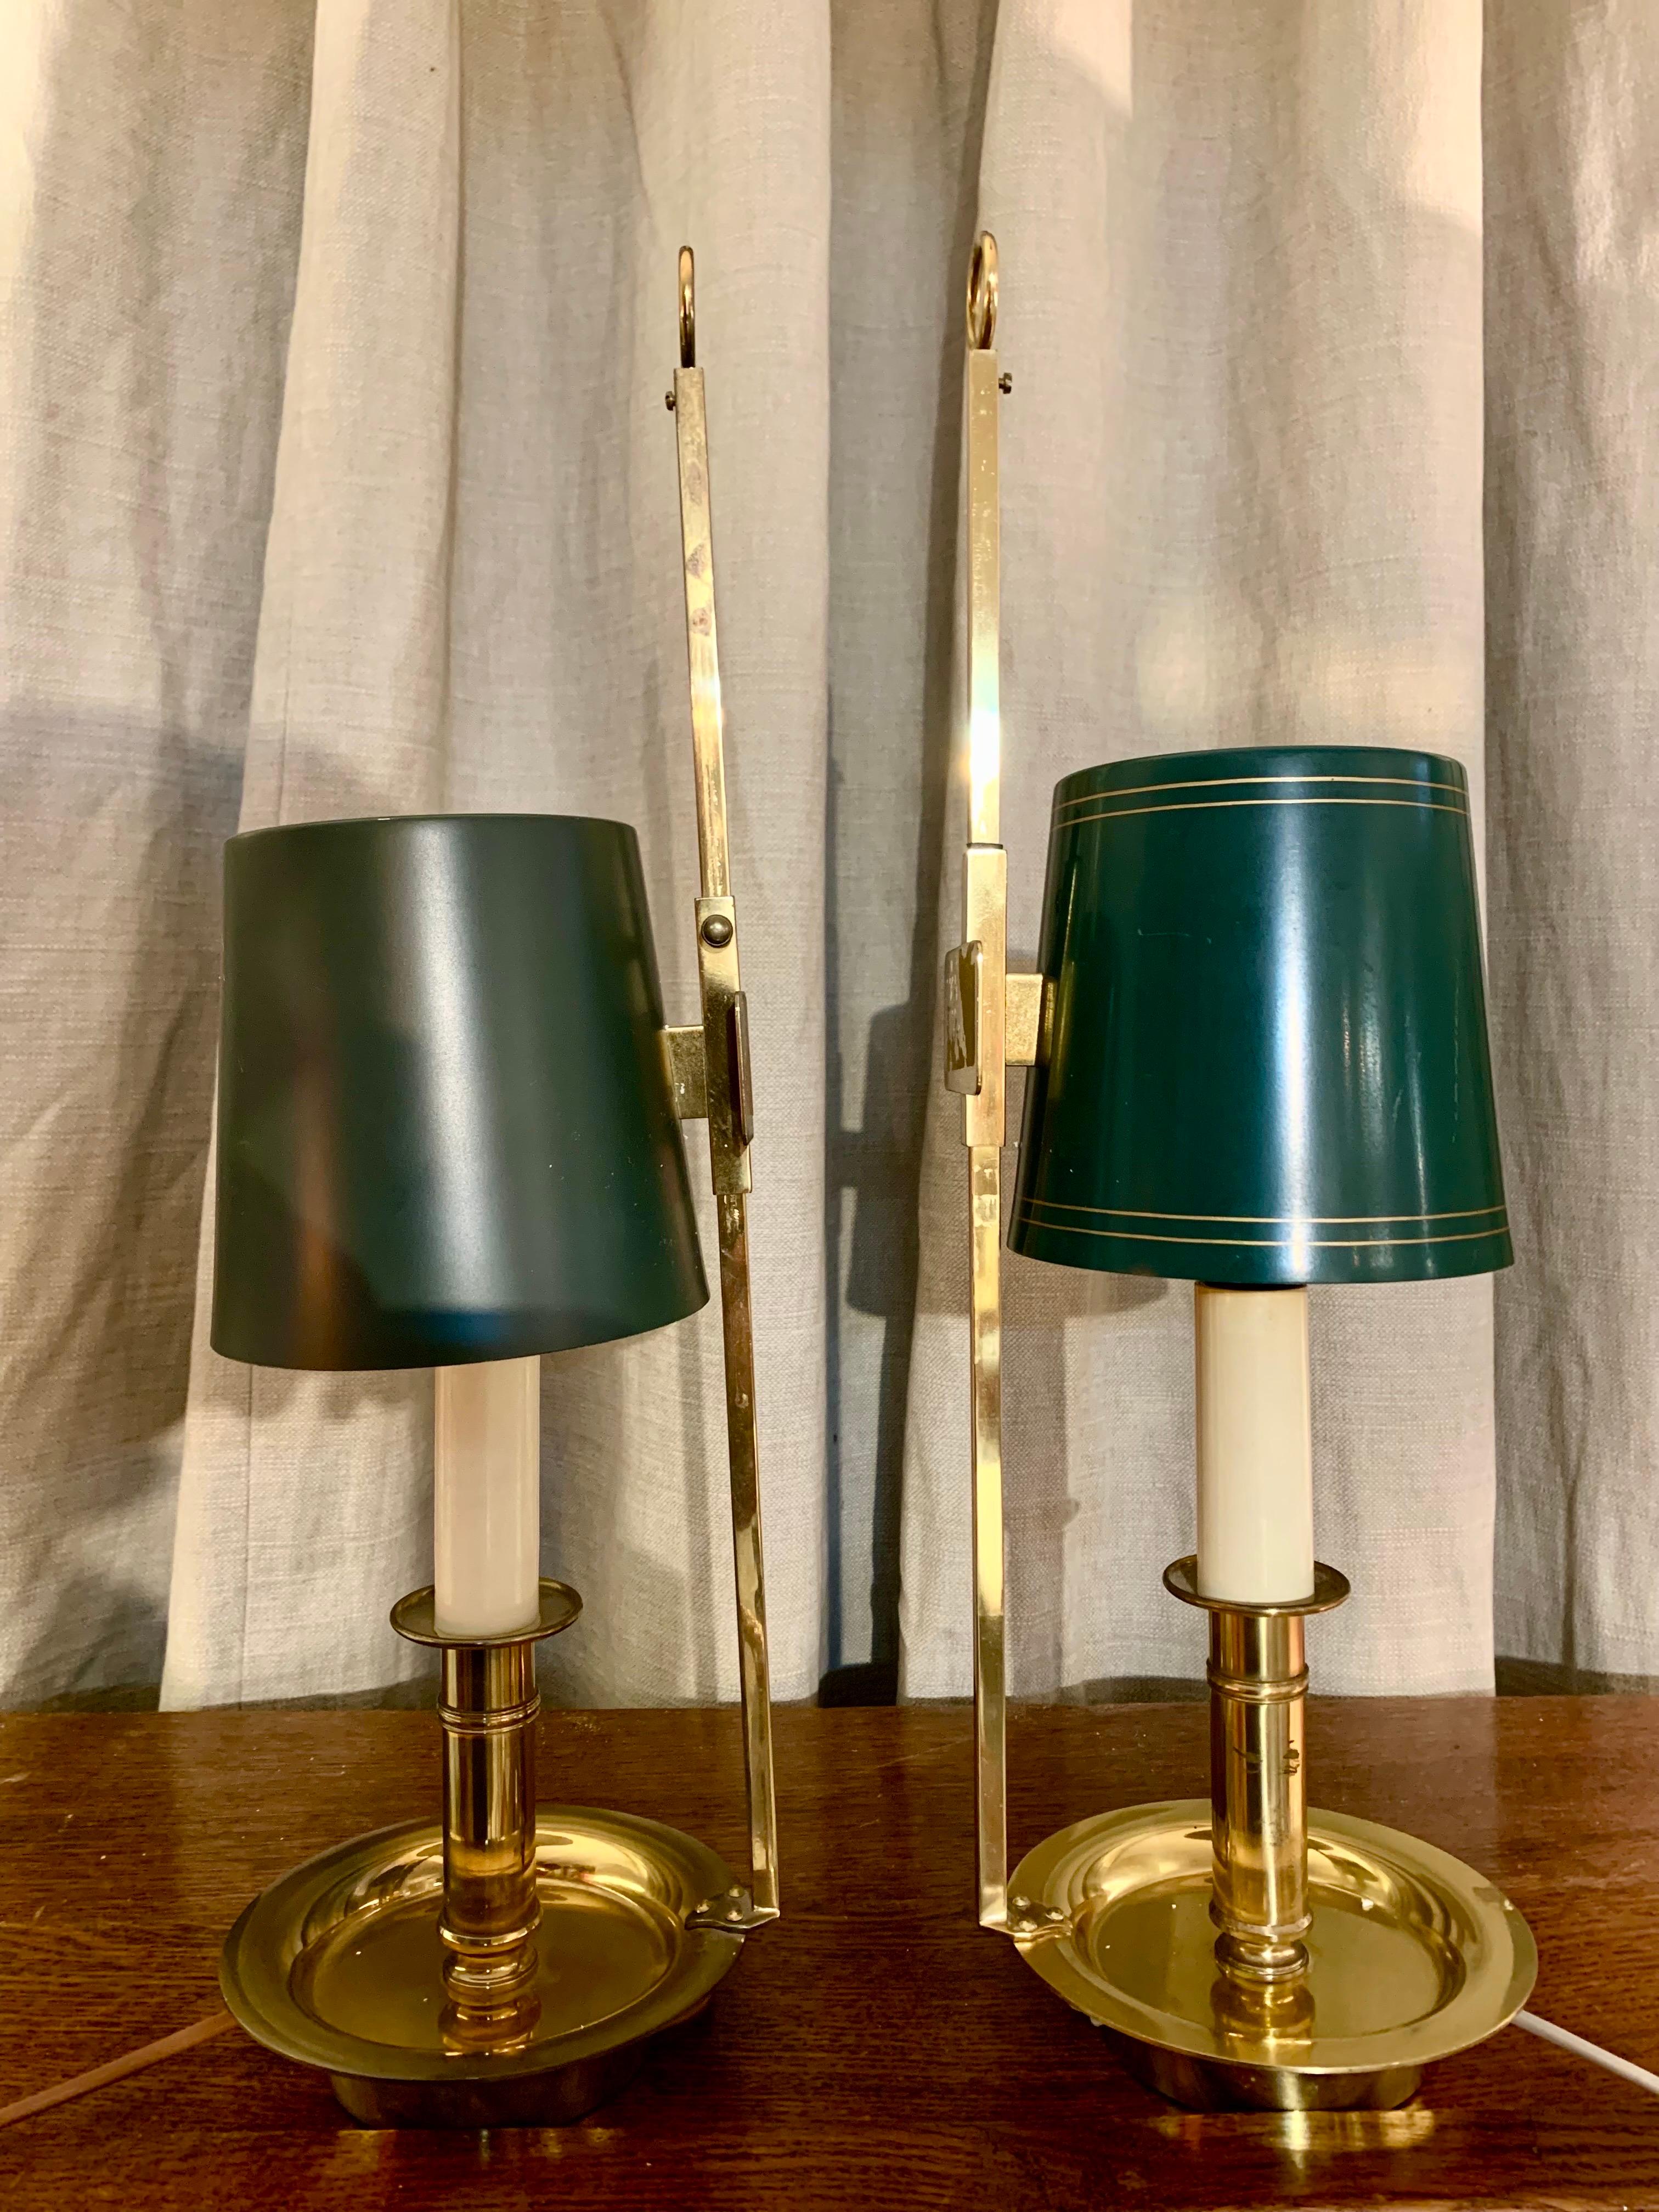 Ein Paar Boullitte-Lampen, in Gold Messing und Metall lackiert Lampenschirme, kann sowohl verwendet werden, um sie auf einem Tisch zu platzieren und hängen sie an der Wand als Wandleuchter Lampe.die Höhe des Lampenschirms kann eingestellt werden